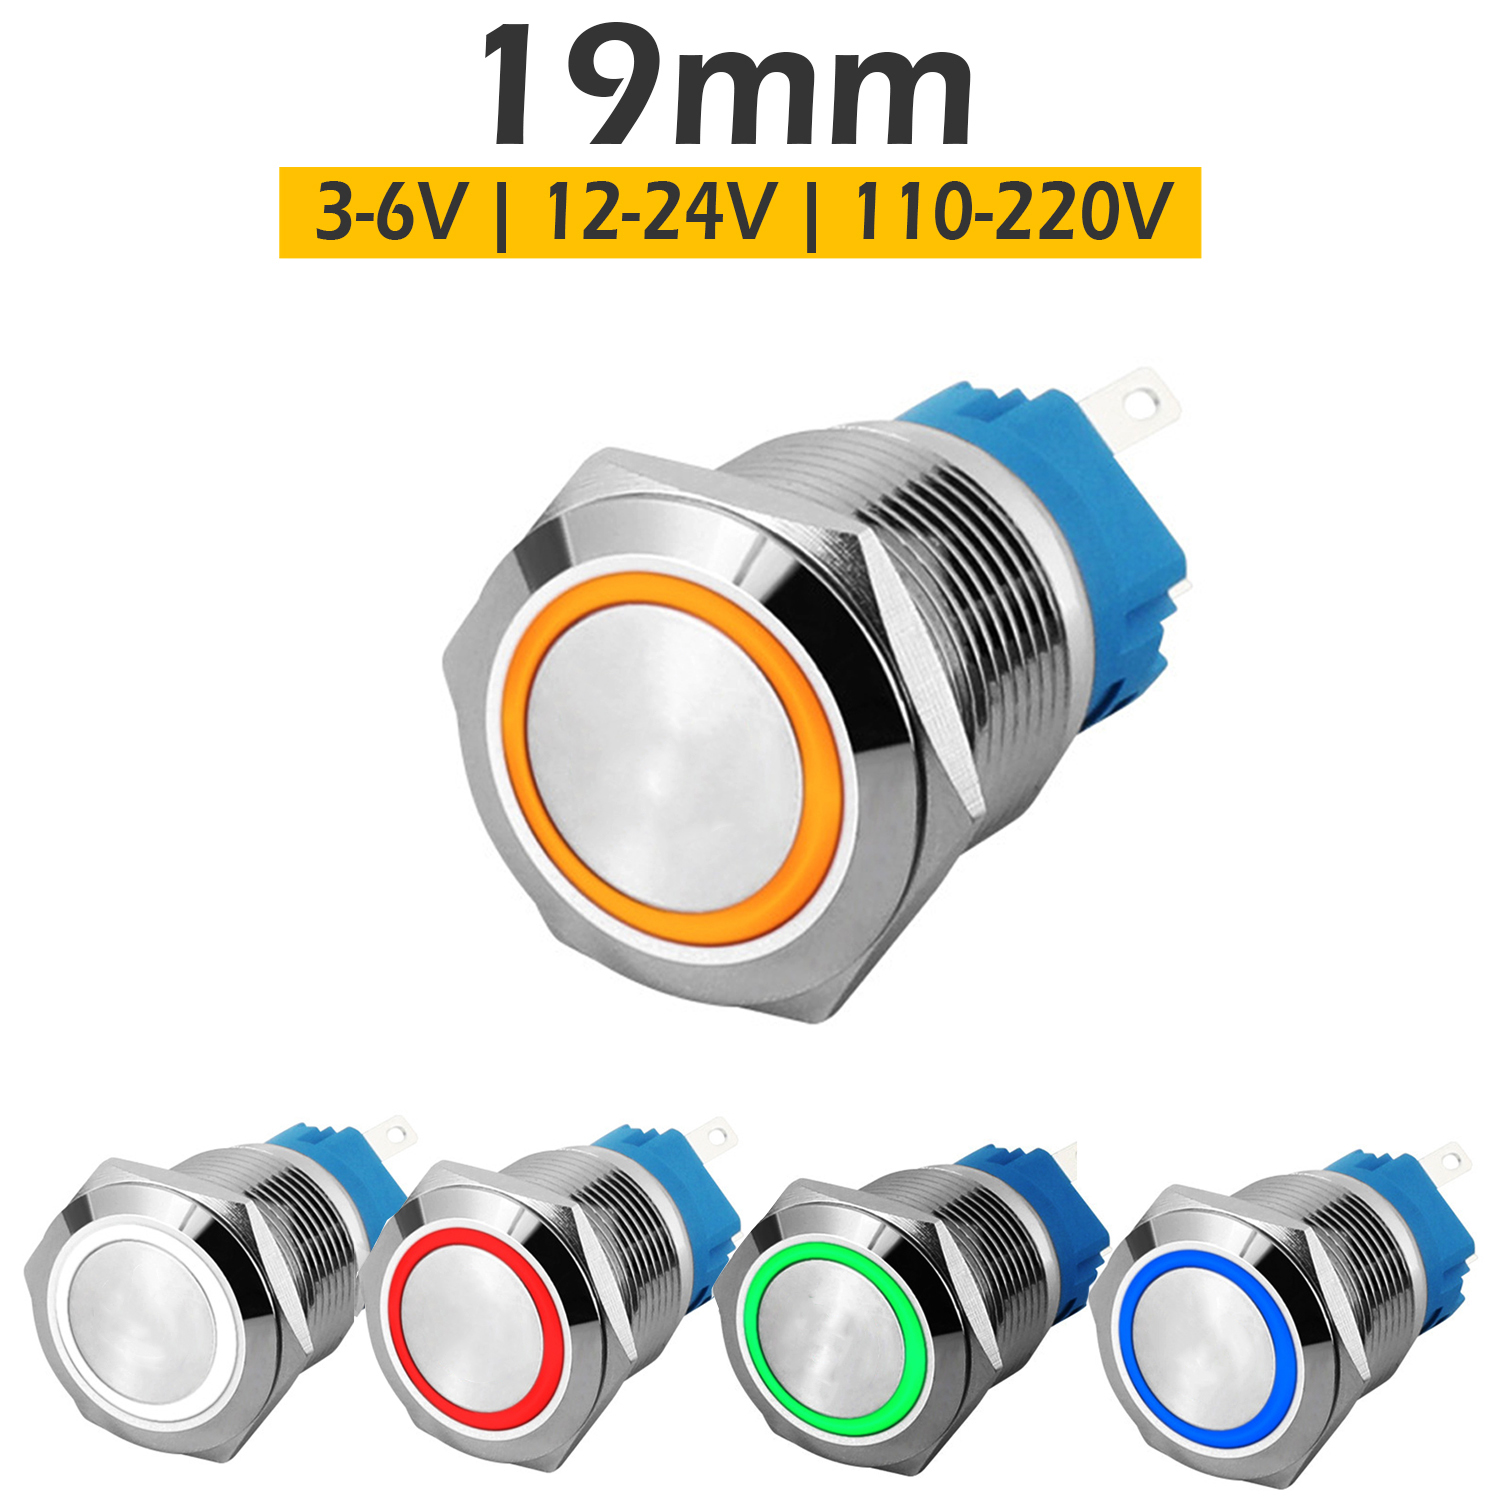 Công tắc Self-Lock 19mm, Nút nhấn tự khóa có đèn LED (3-6V 12-24V 110-220V), Vỏ Inox chống nước, Chịu nhiệt